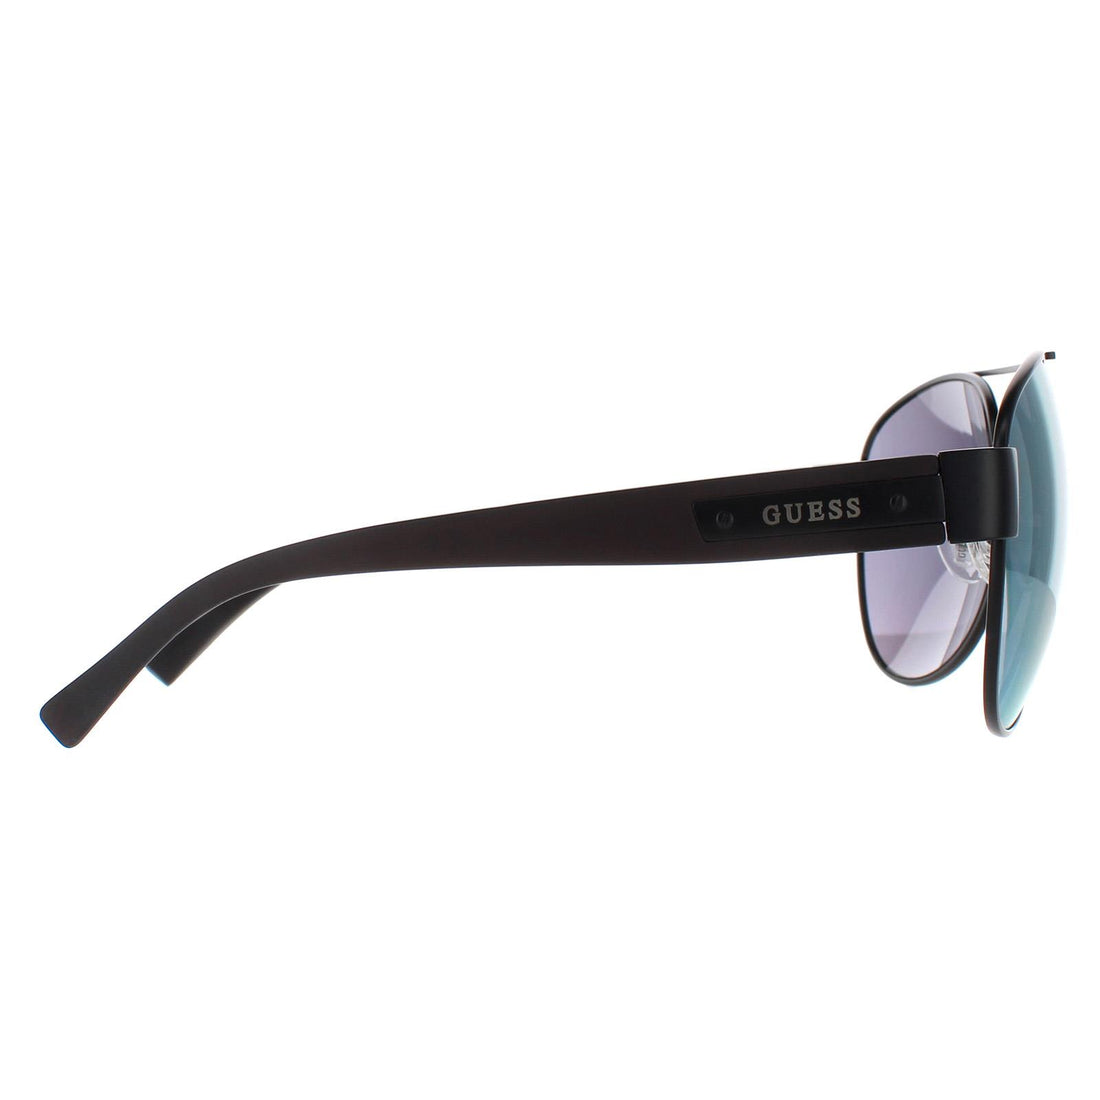 Guess Sunglasses GU6830 02Q Black Grey Mirror